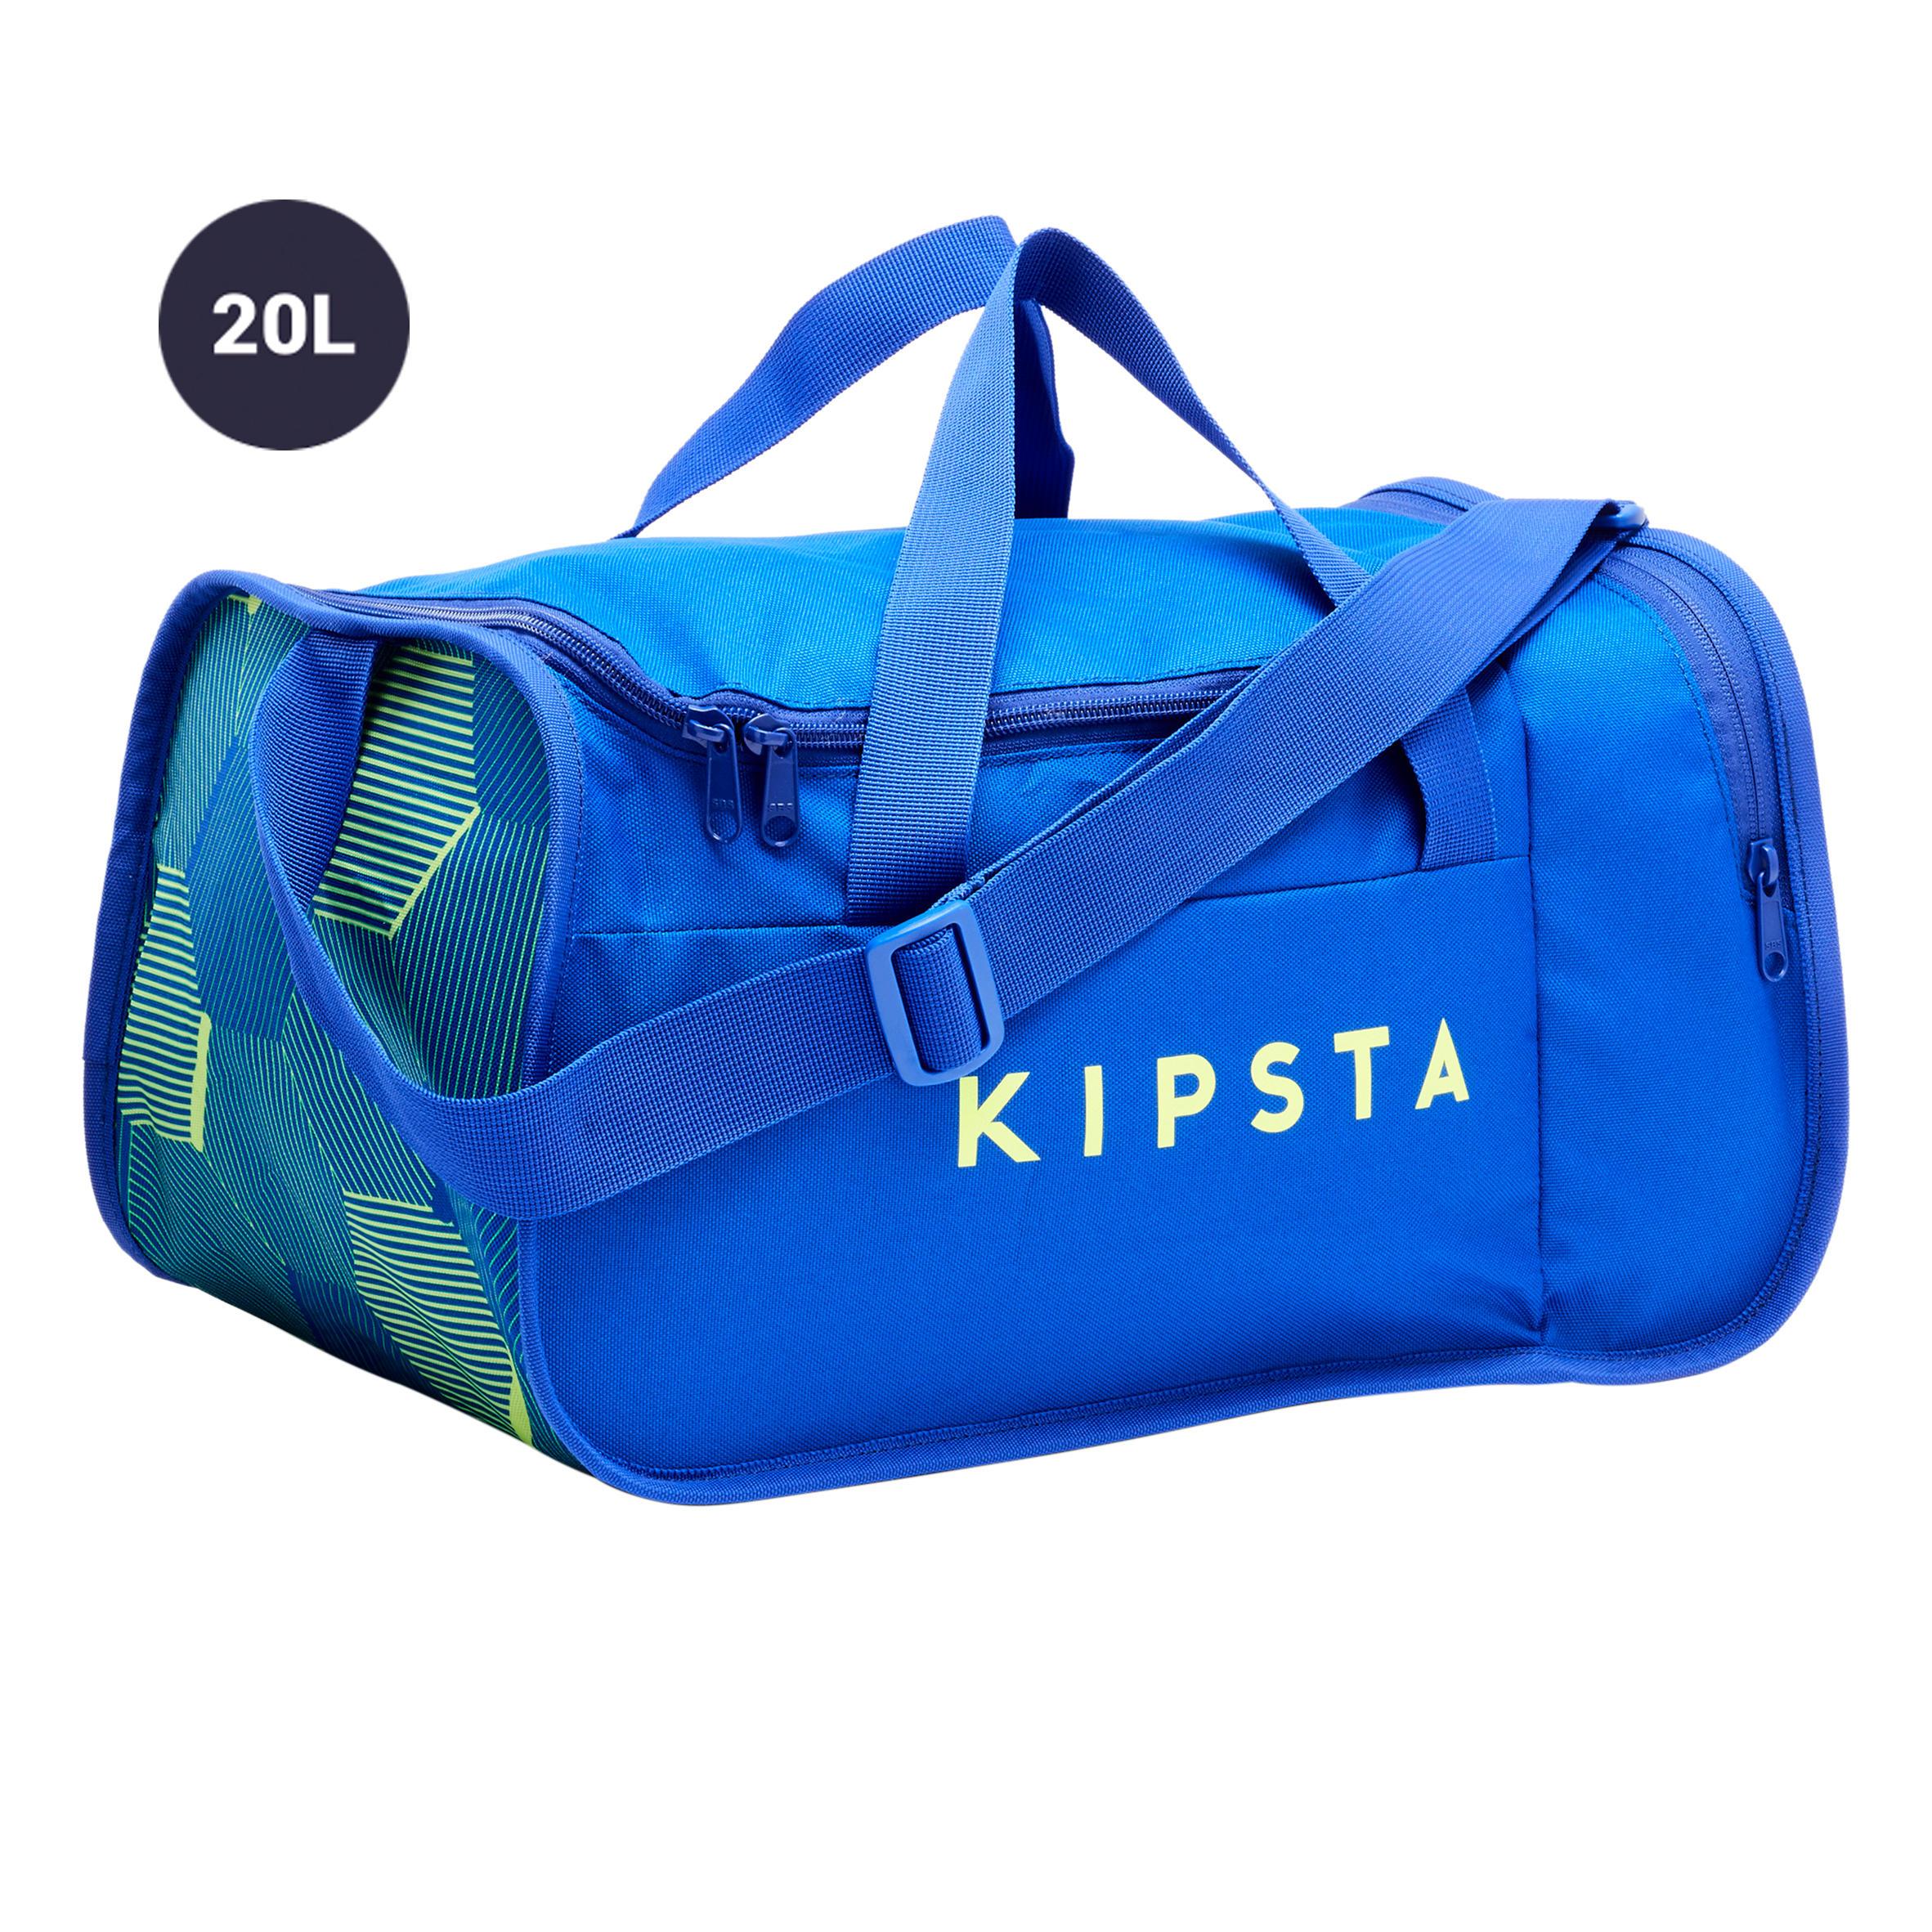 [ด่วน!! โปรโมชั่นมีจำนวนจำกัด] กระเป๋ากีฬารุ่น KIPOCKET ความจุ 20 ลิตร (สีฟ้า/เหลือง) สำหรับ ฟุตบอล